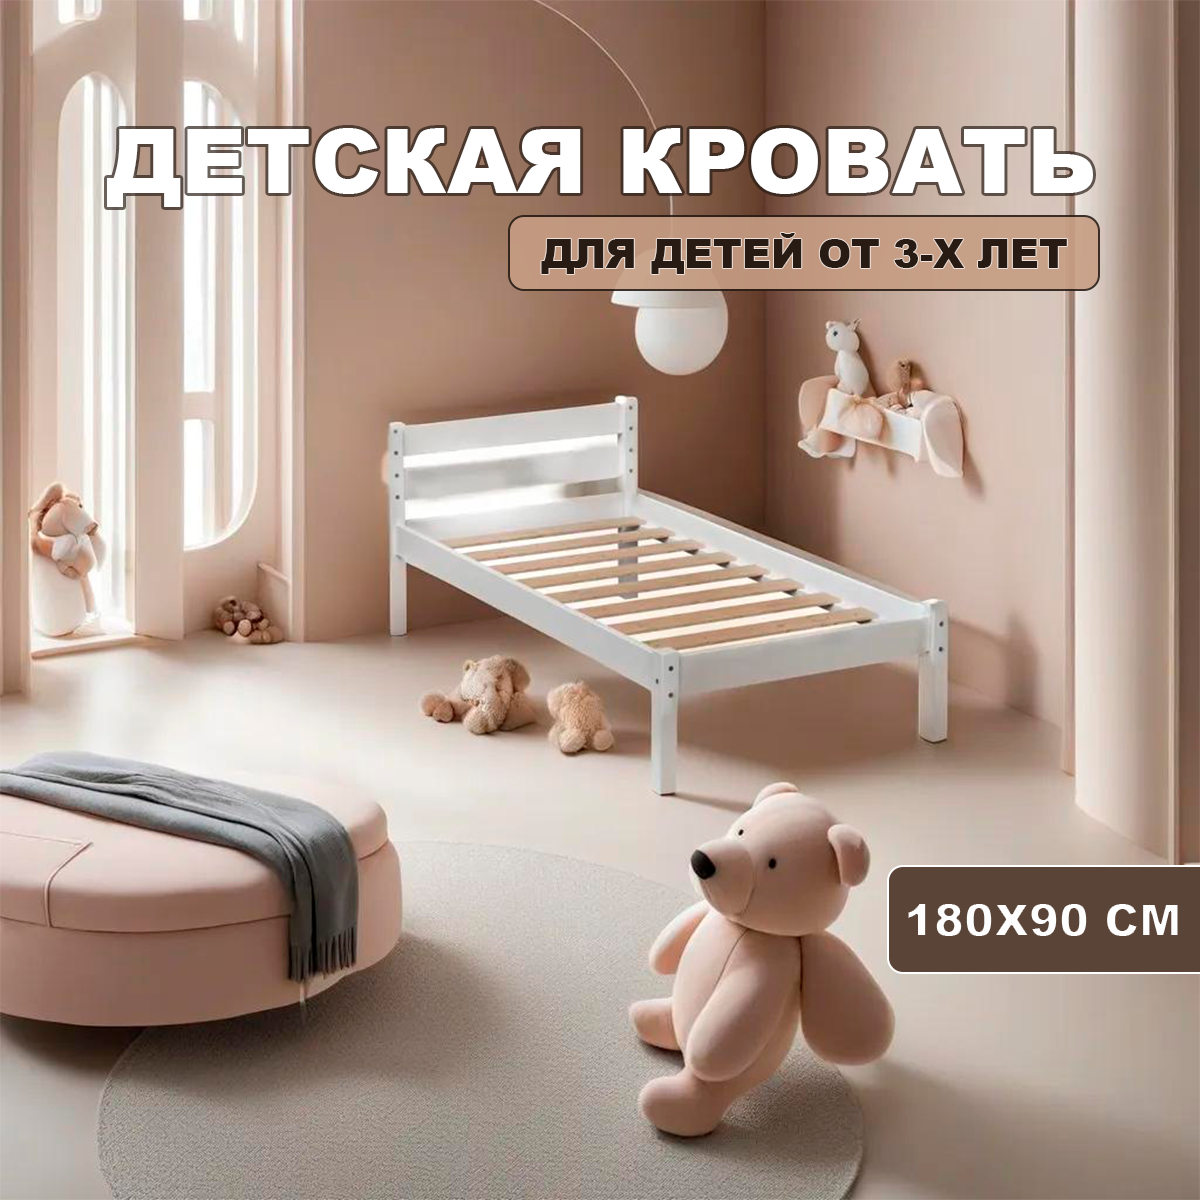 Детская кровать KIDS CITY односпальная 180х90, Белая